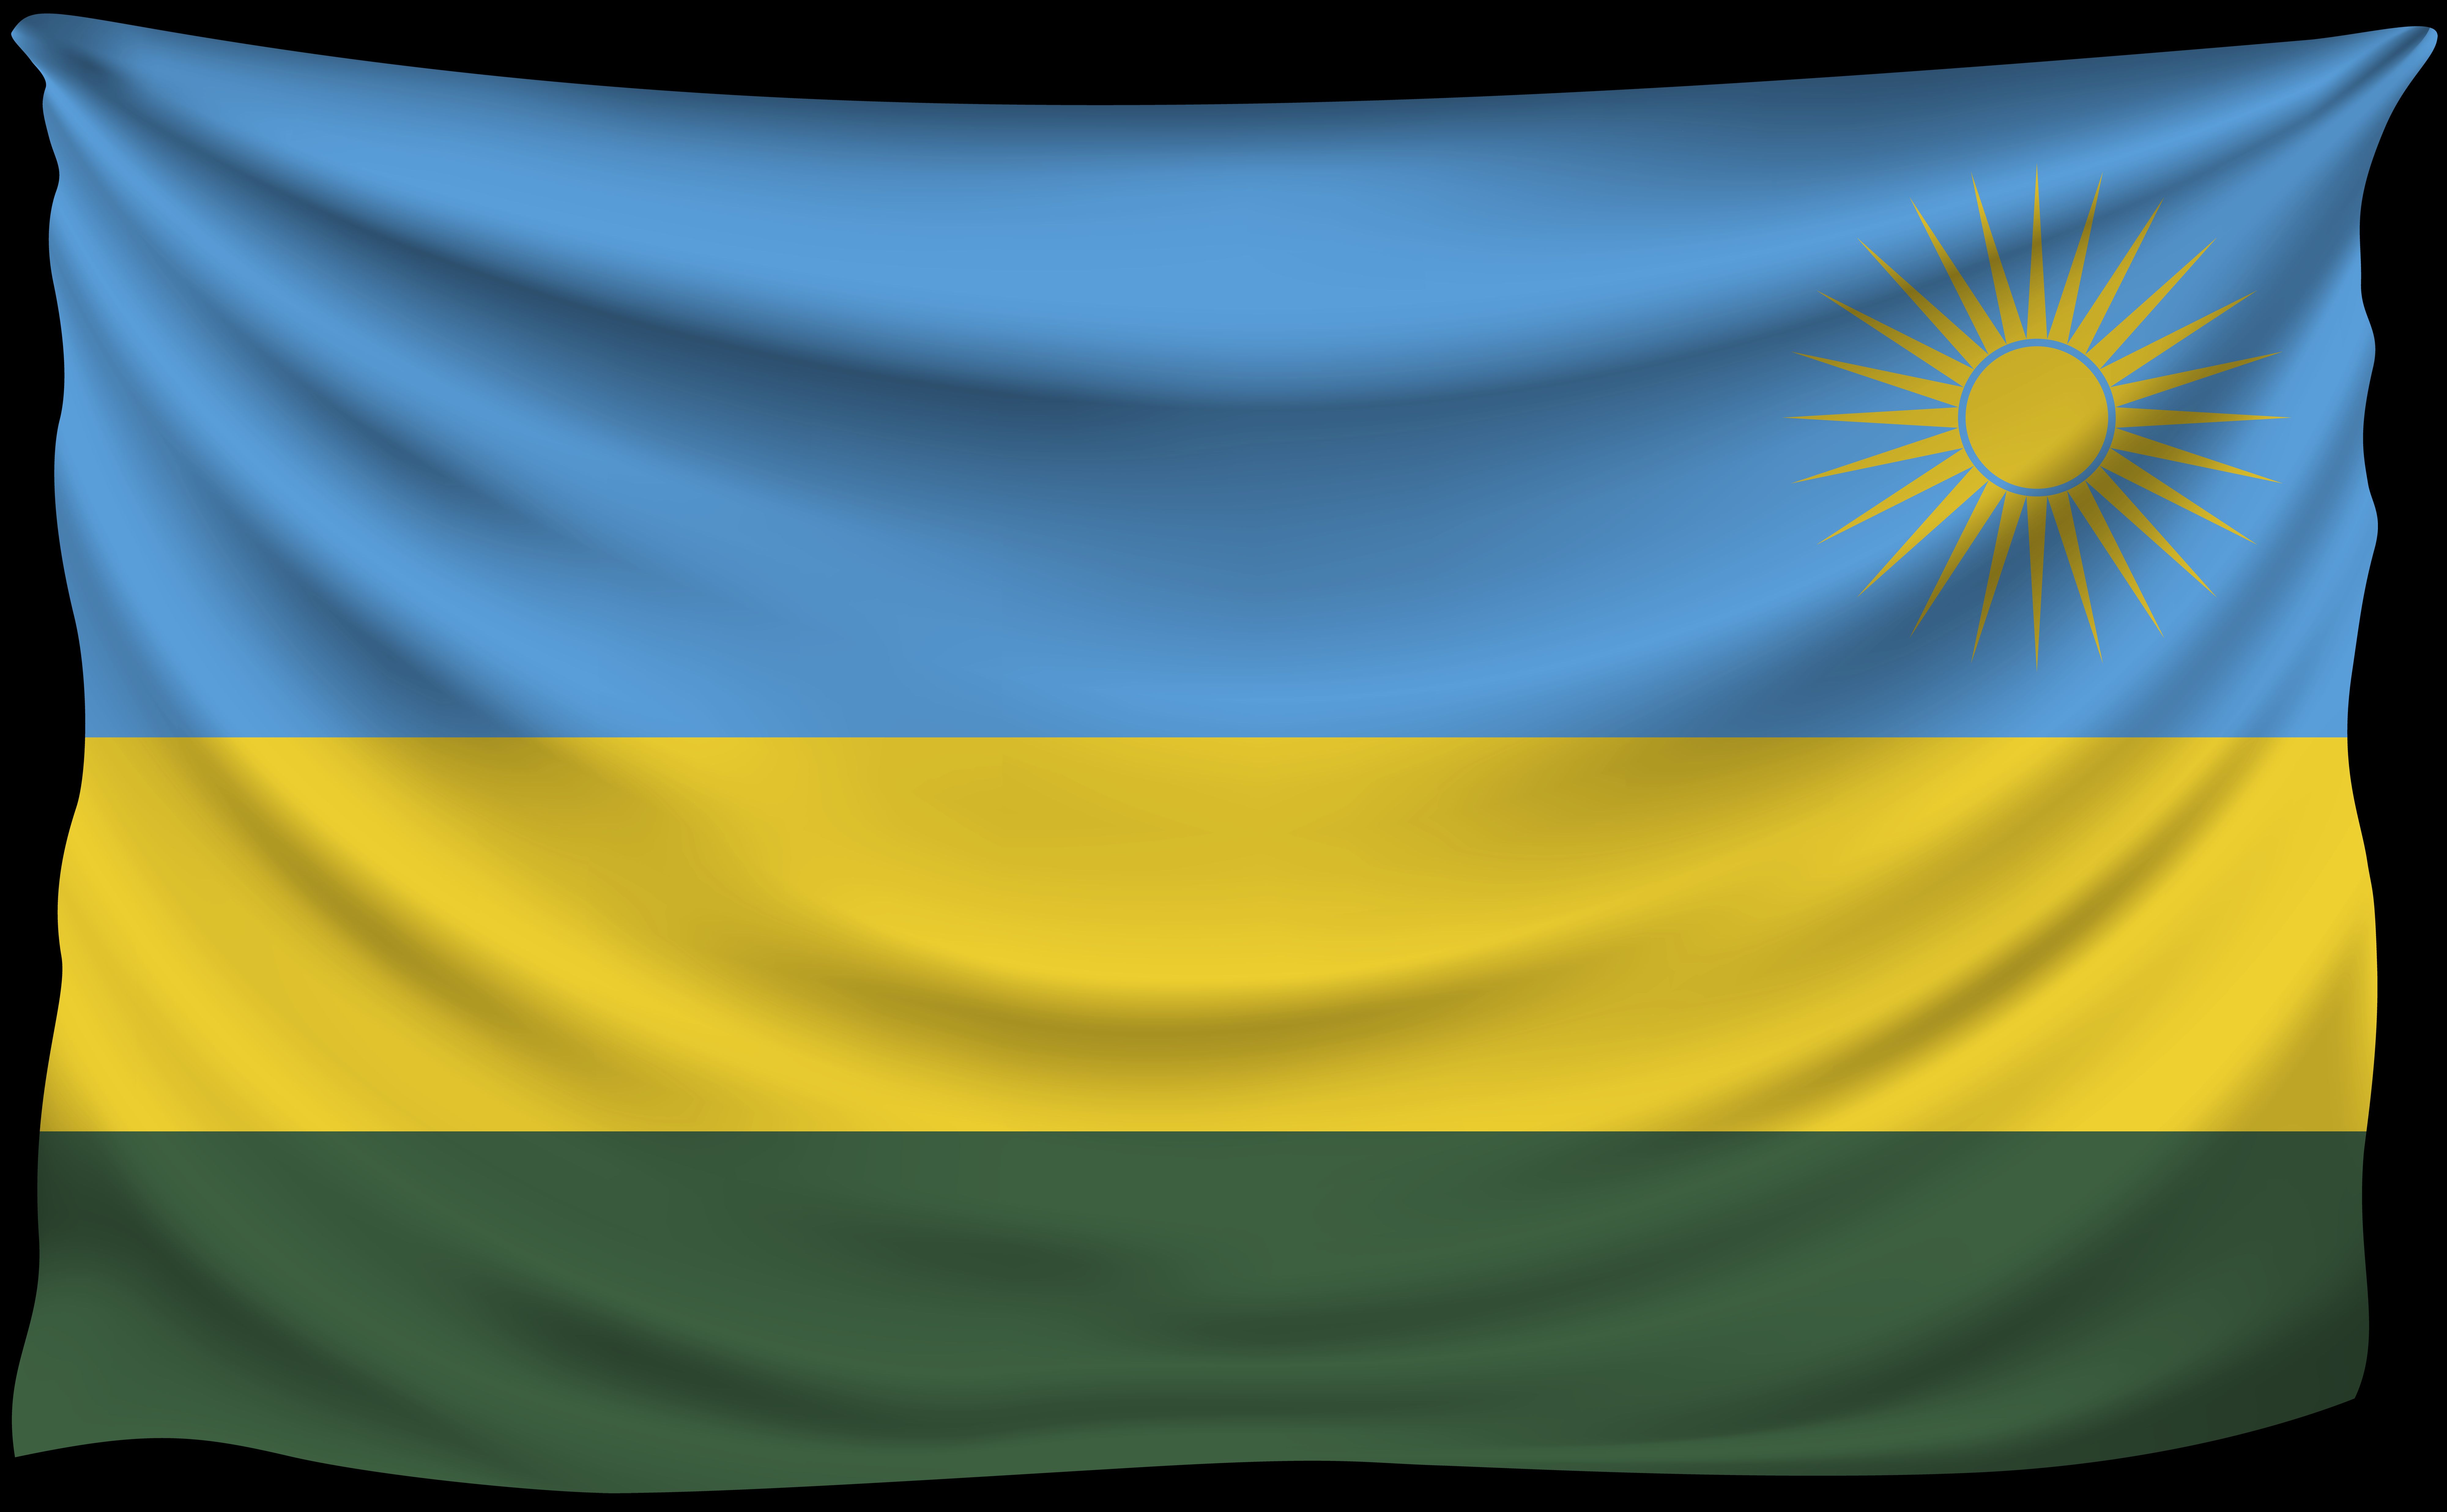 Скачать обои Флаг Руанды на телефон бесплатно